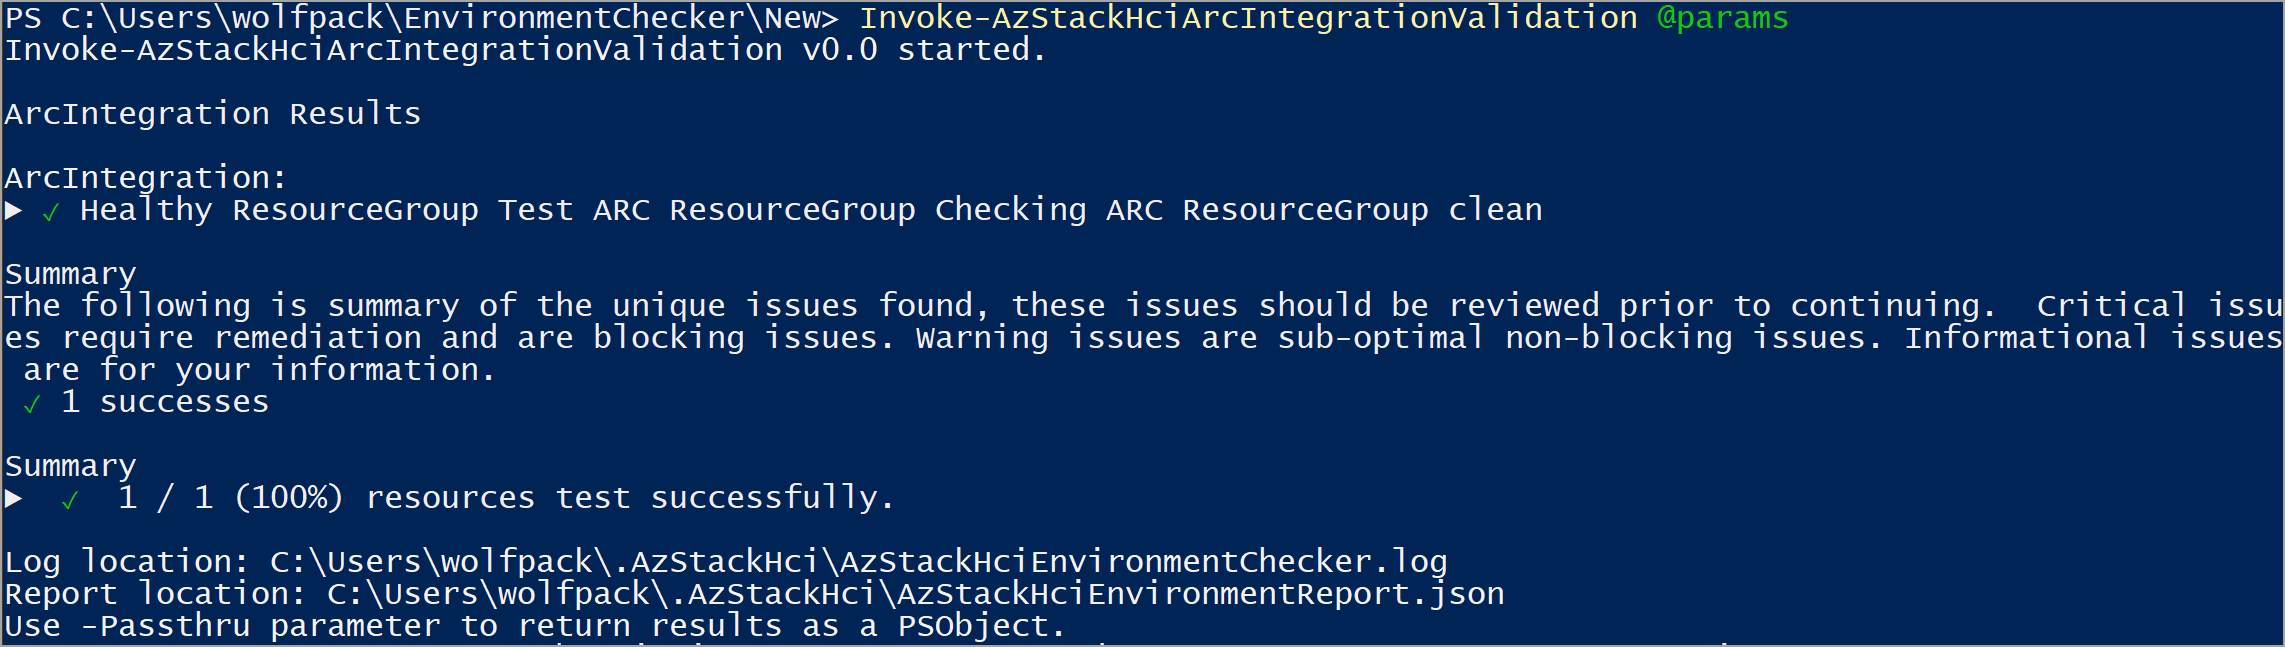 Captura de pantalla de un informe pasado después de ejecutar el validador de integración de Arc.